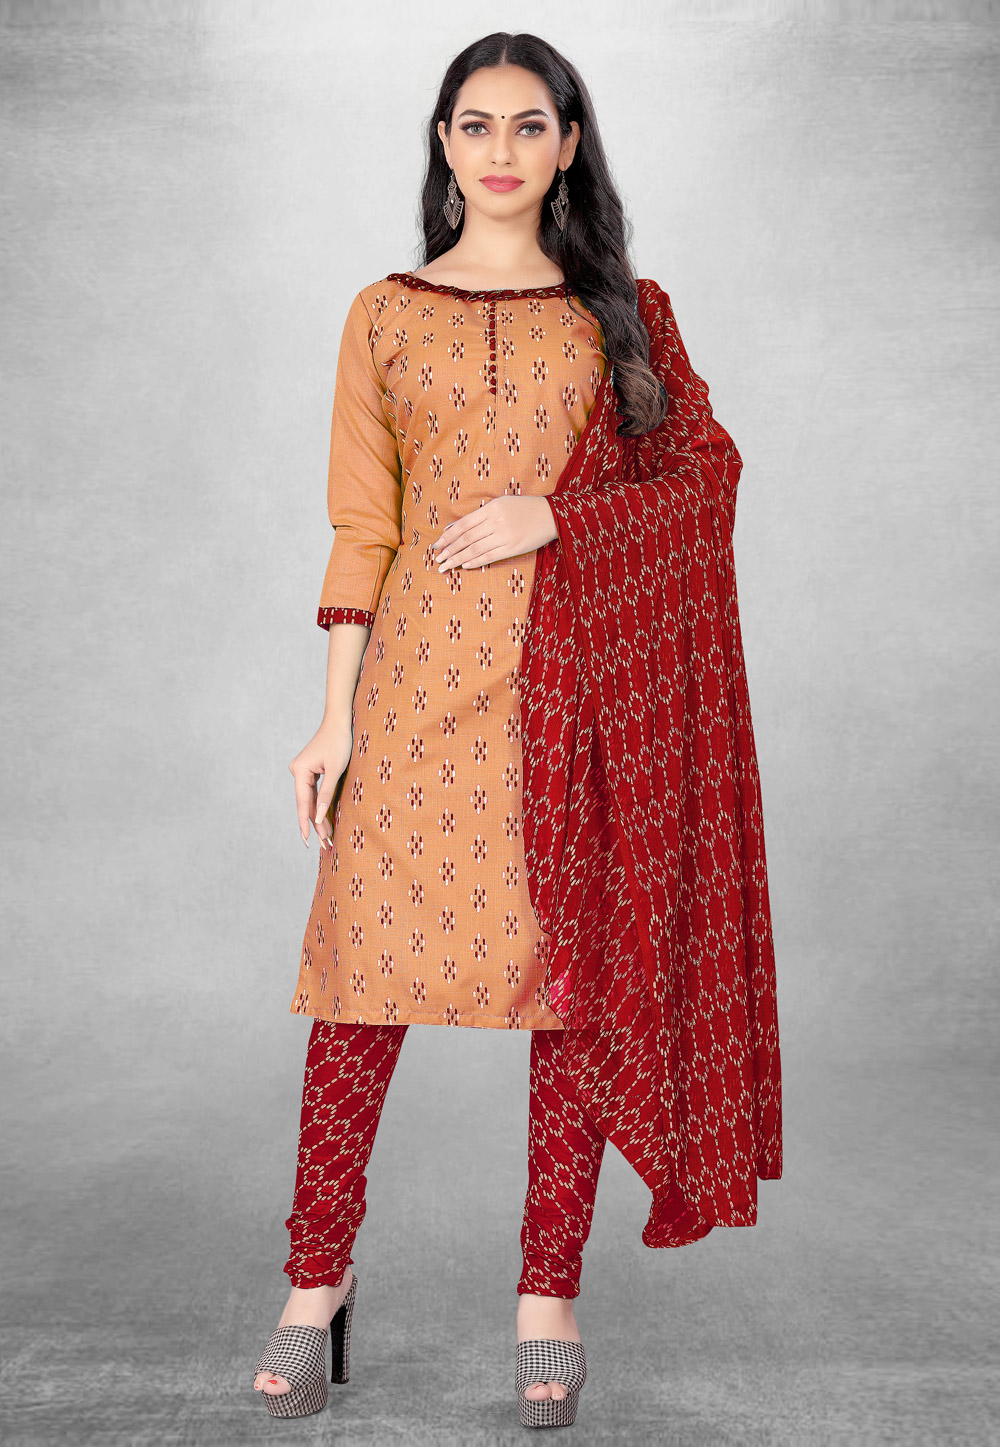 Green Cotton Patiala Suit 143237 | Patiala suit designs, Salwar neck designs,  Stylish dress designs